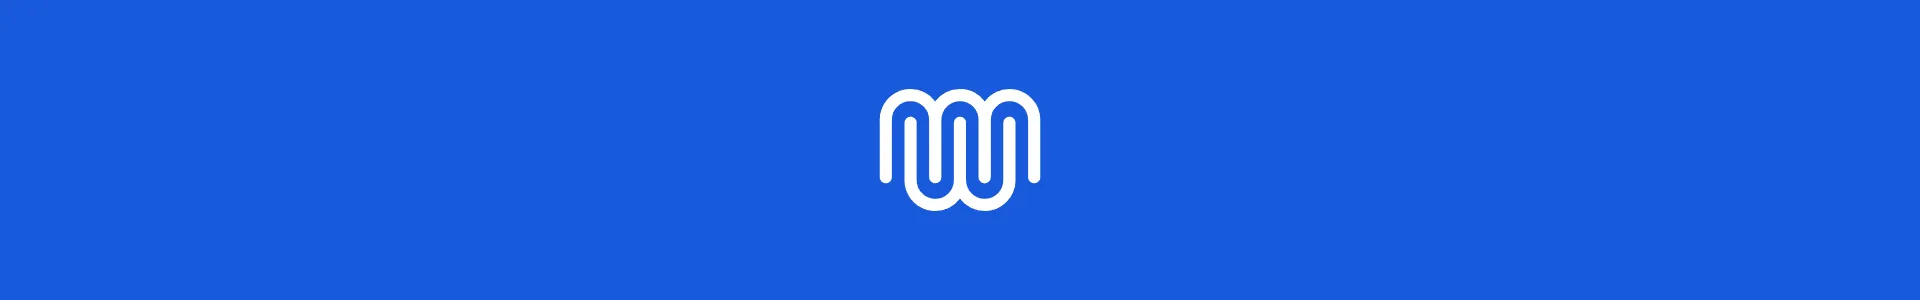 Mwmbl - 无广告、无追踪、无繁杂、无盈利的搜索引擎